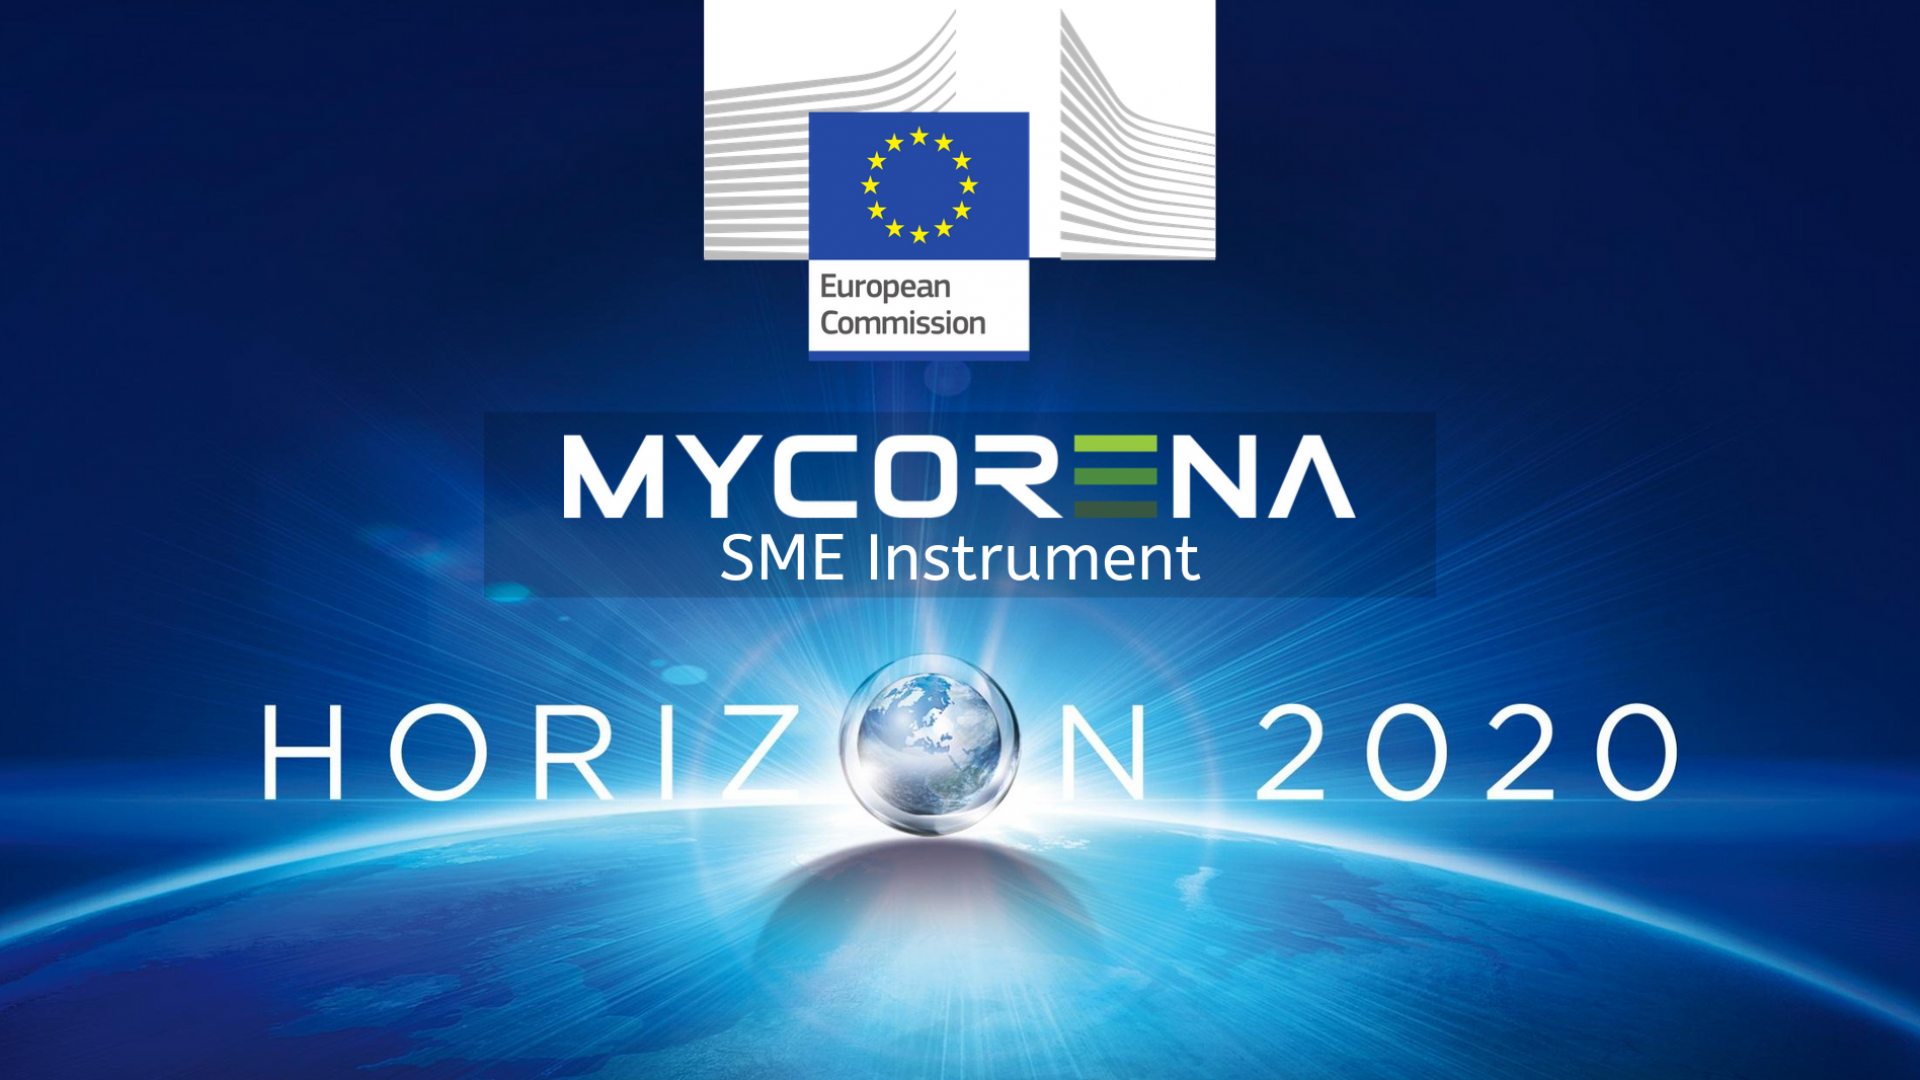 EU Funding to Enter SME Instument Horizon 2020 Program